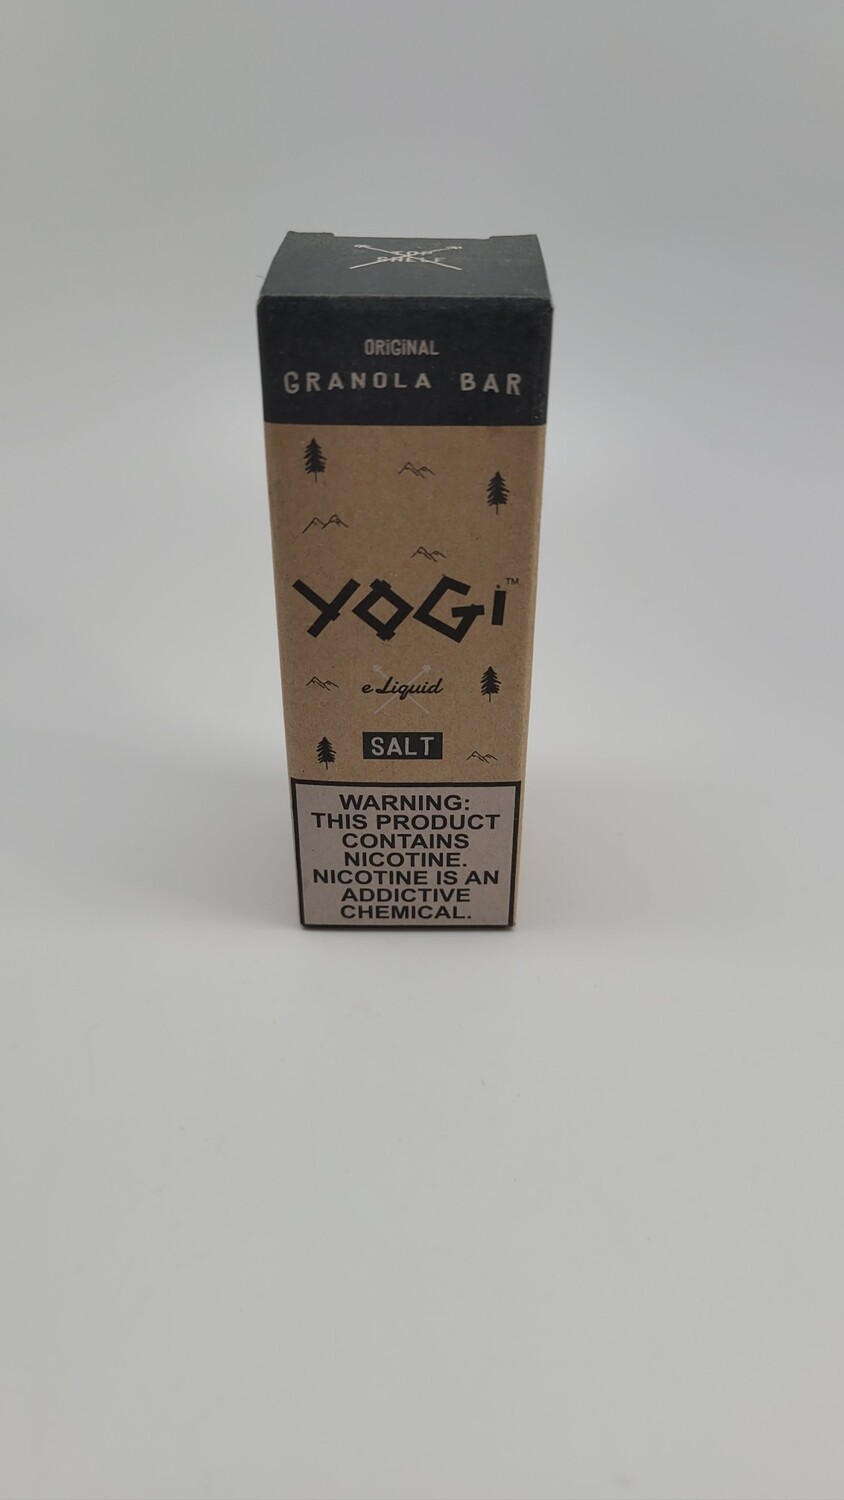 Yogi Salt 30ml Original Granola Bar